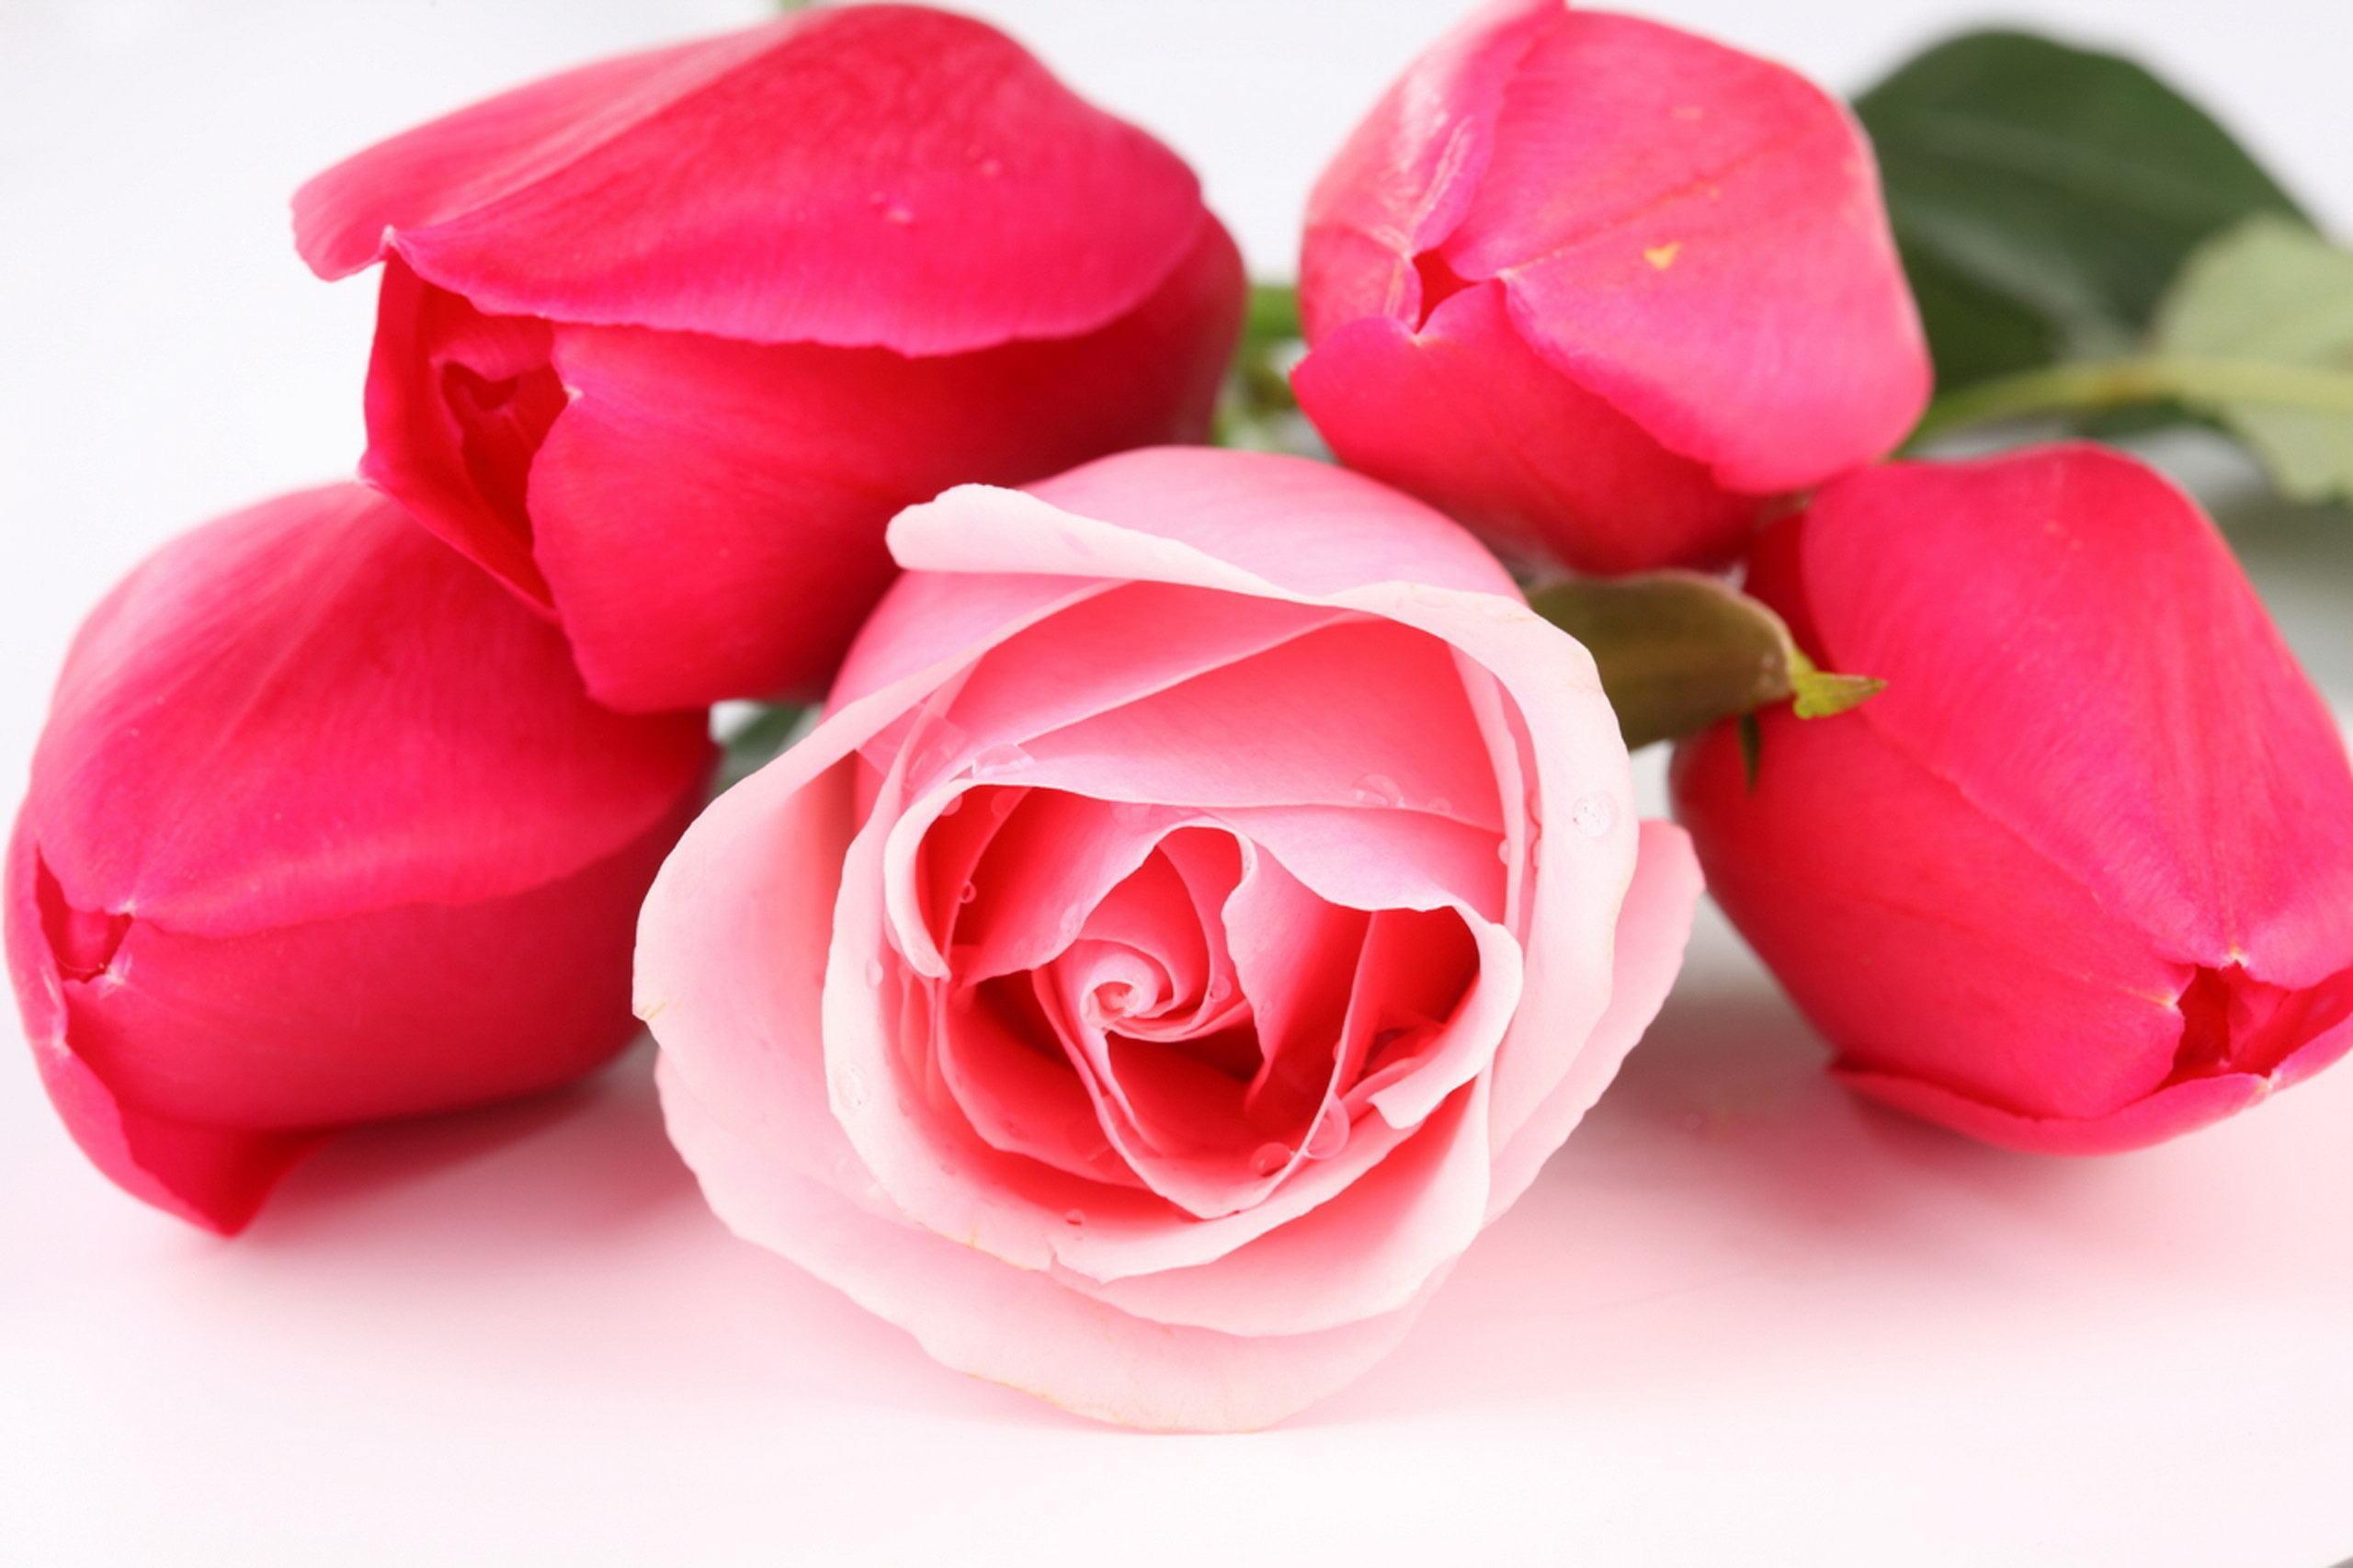 Rose Flowers Wallpaper For Desktop For Desk HD Wallpaper